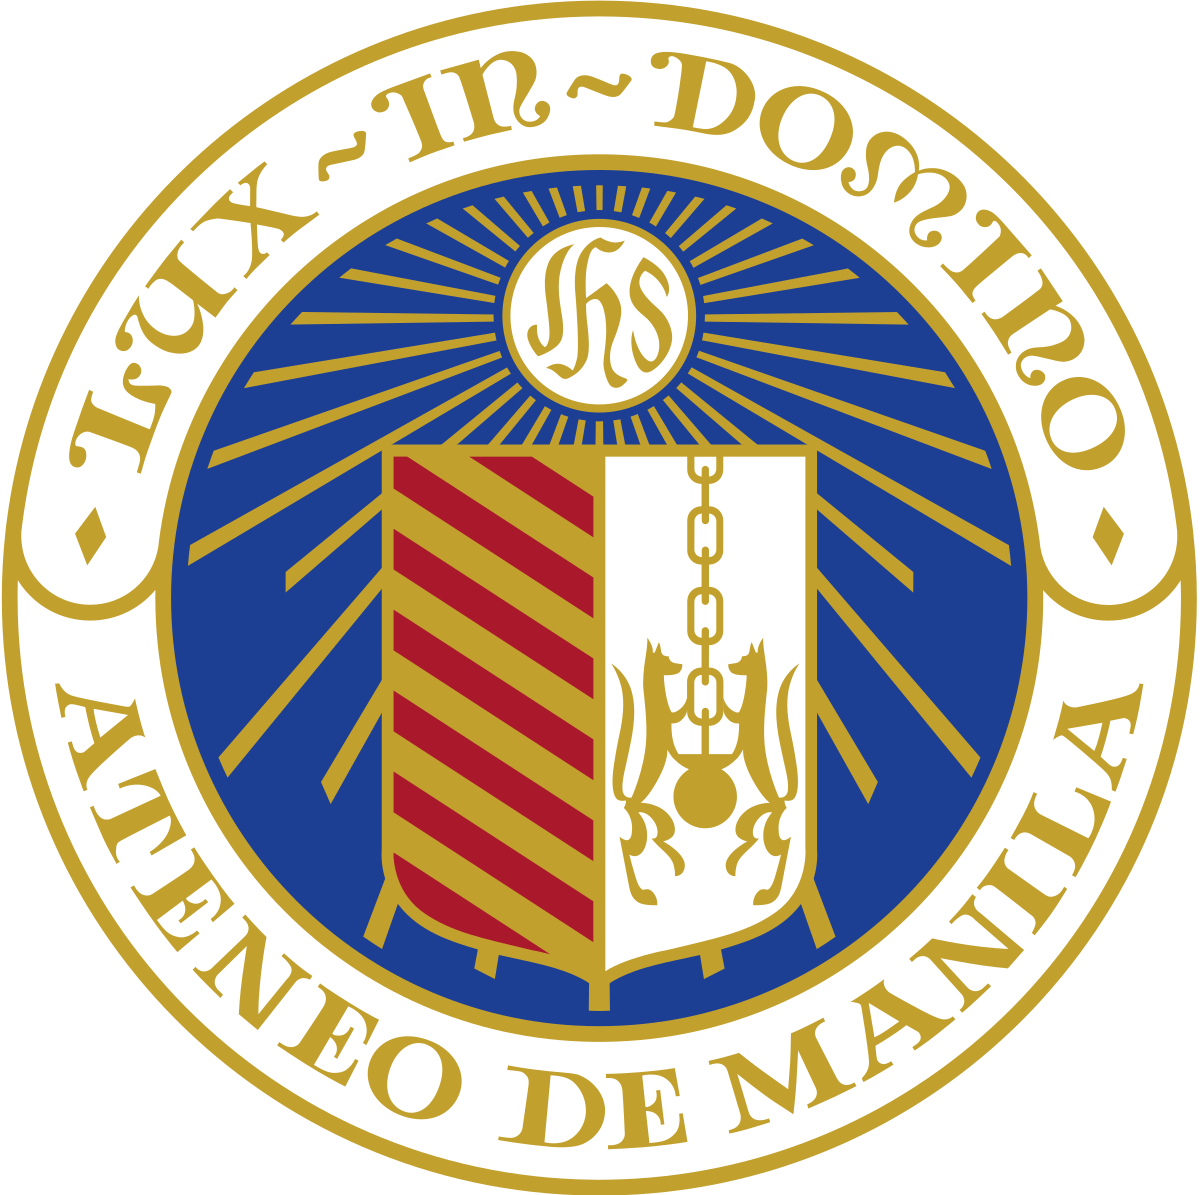 안테네오 데 마닐라 대학교 (Ateneo de Manila University) 로고